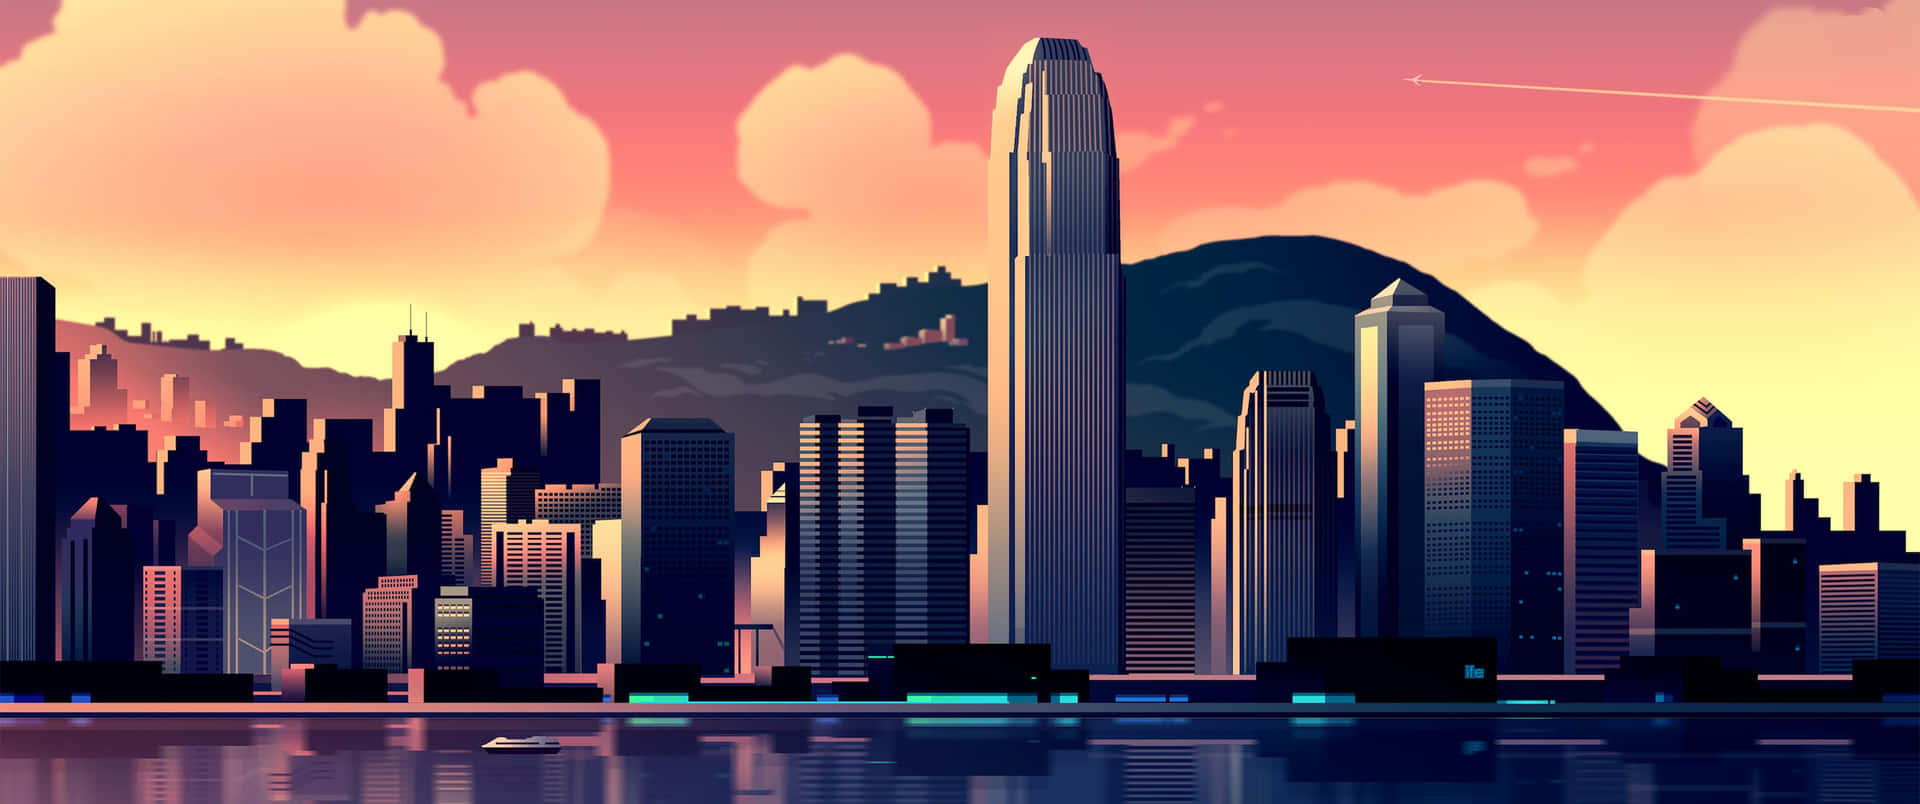 Dave2d Hongkong Skyline Wallpaper